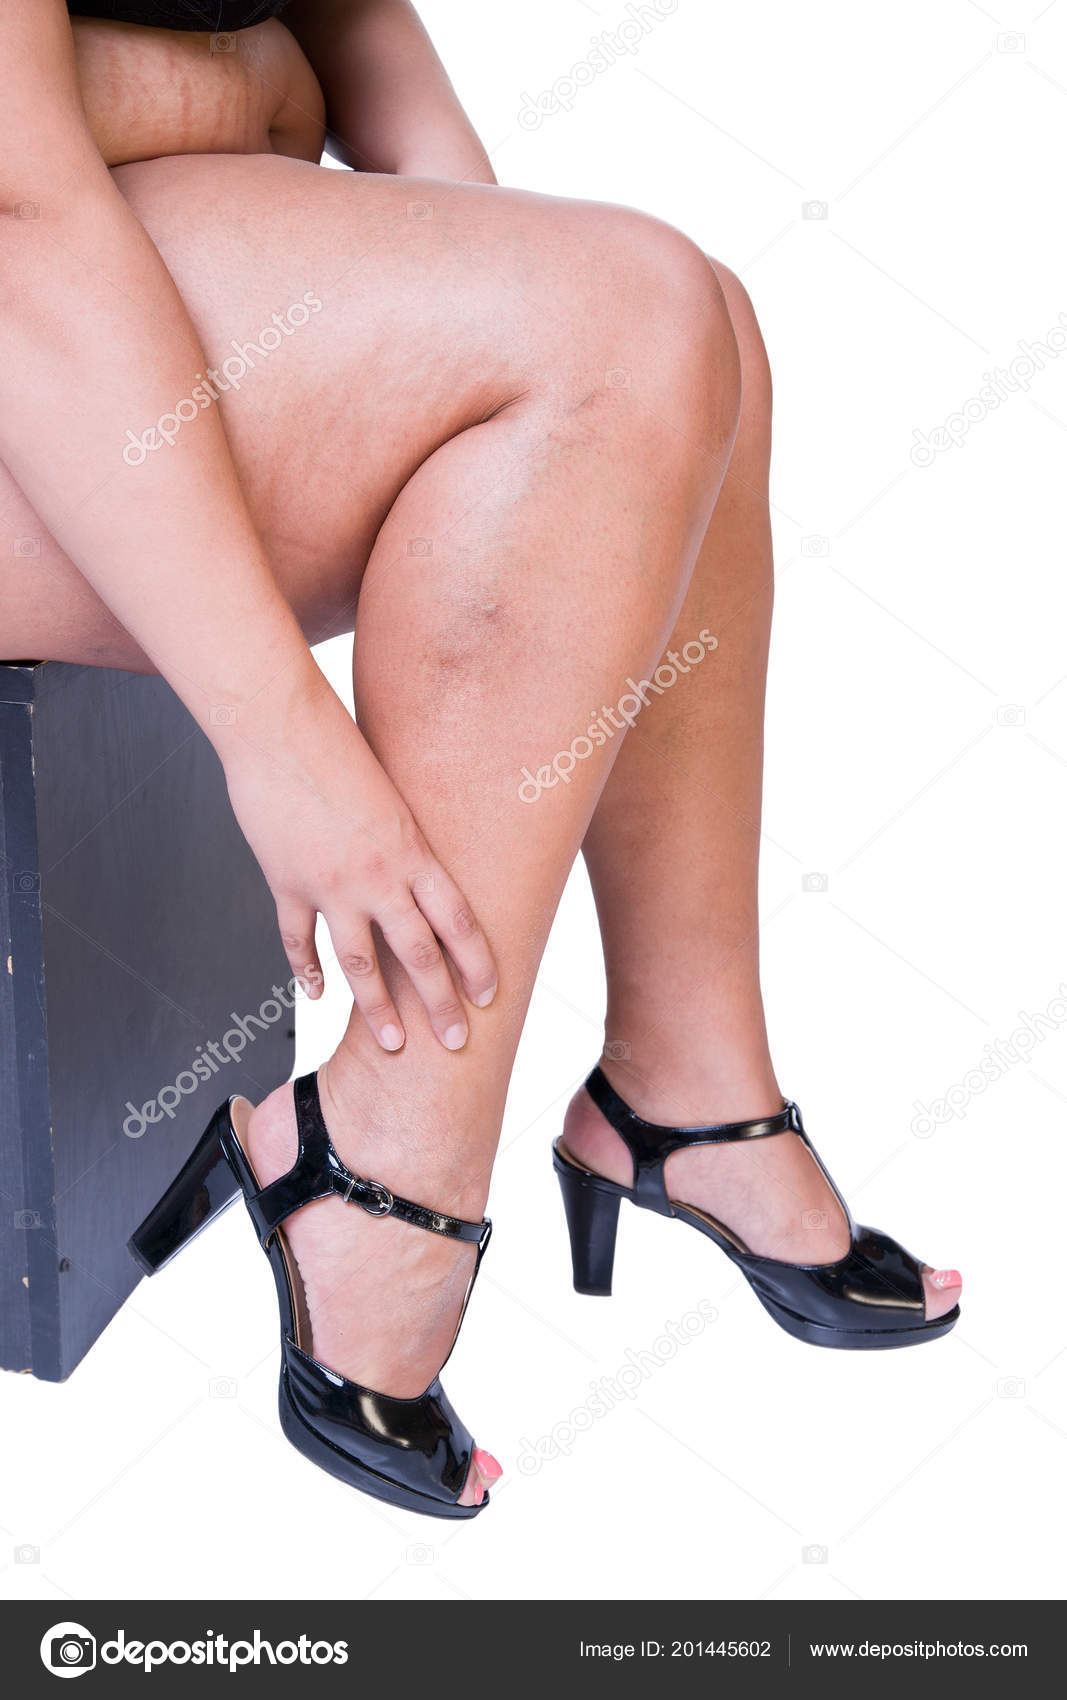 thick women in heels